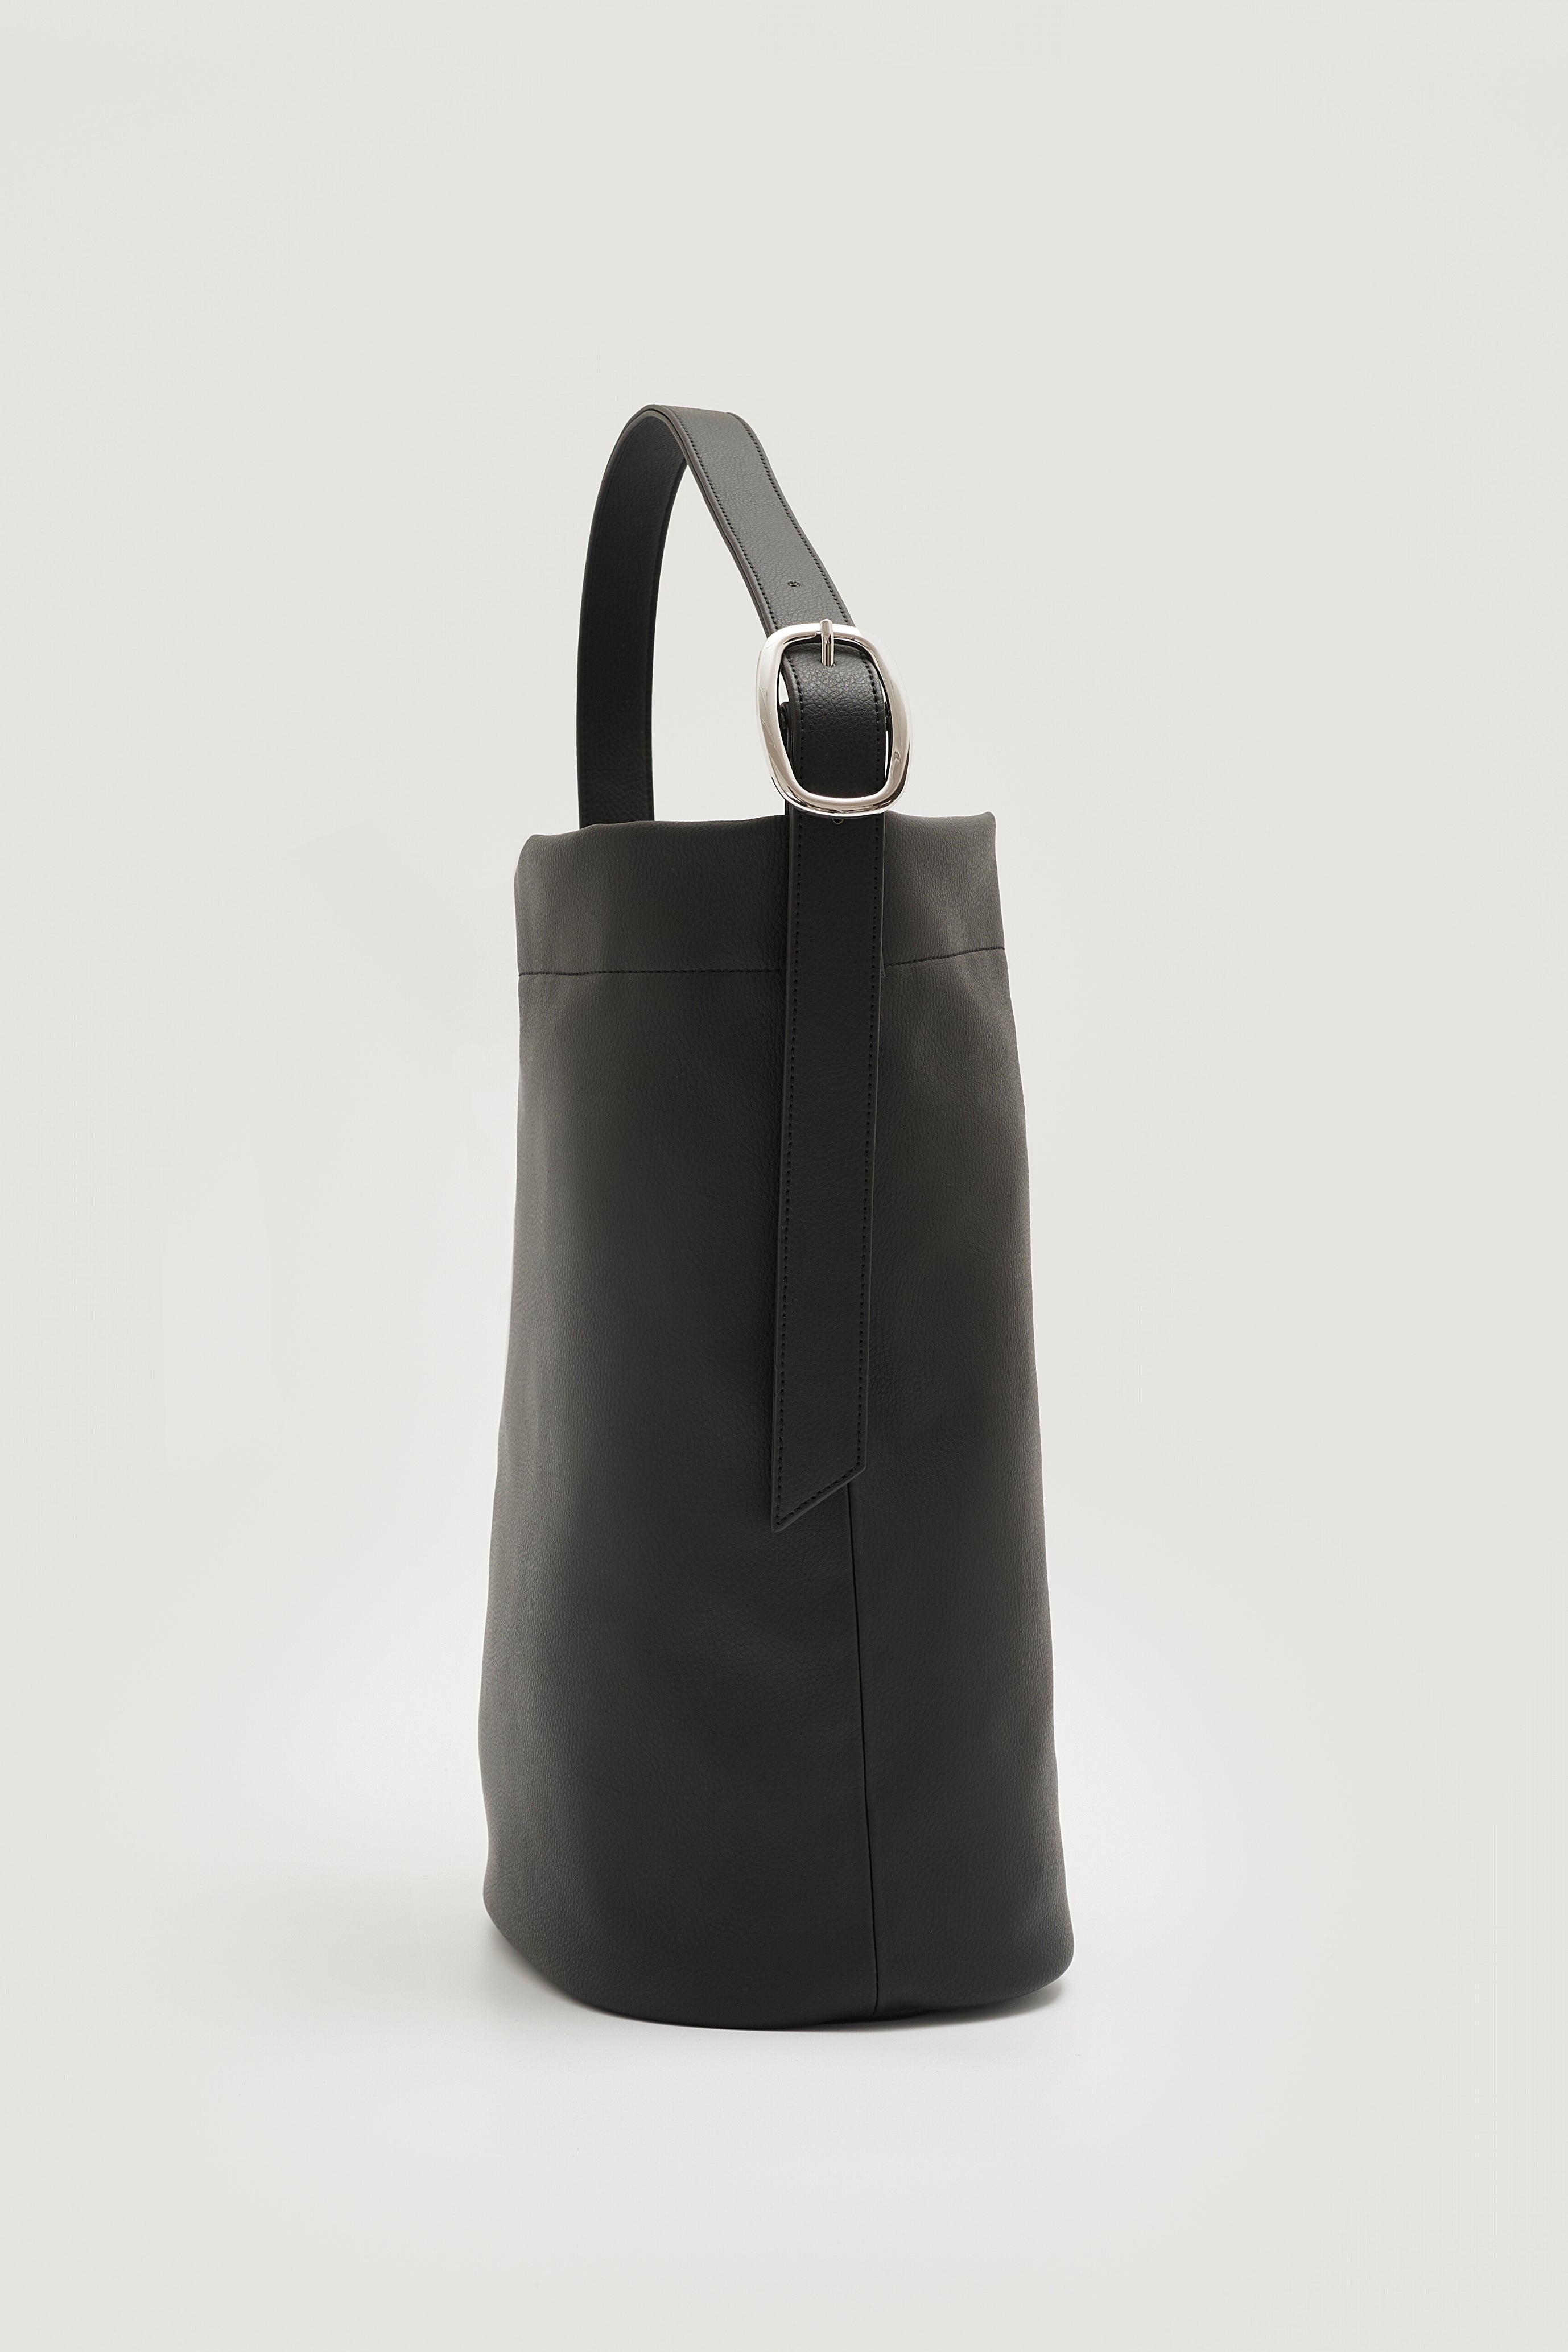 国産アップルレザー製トートバッグ「Apple 2Way Tote Bag」 | LOVST ...